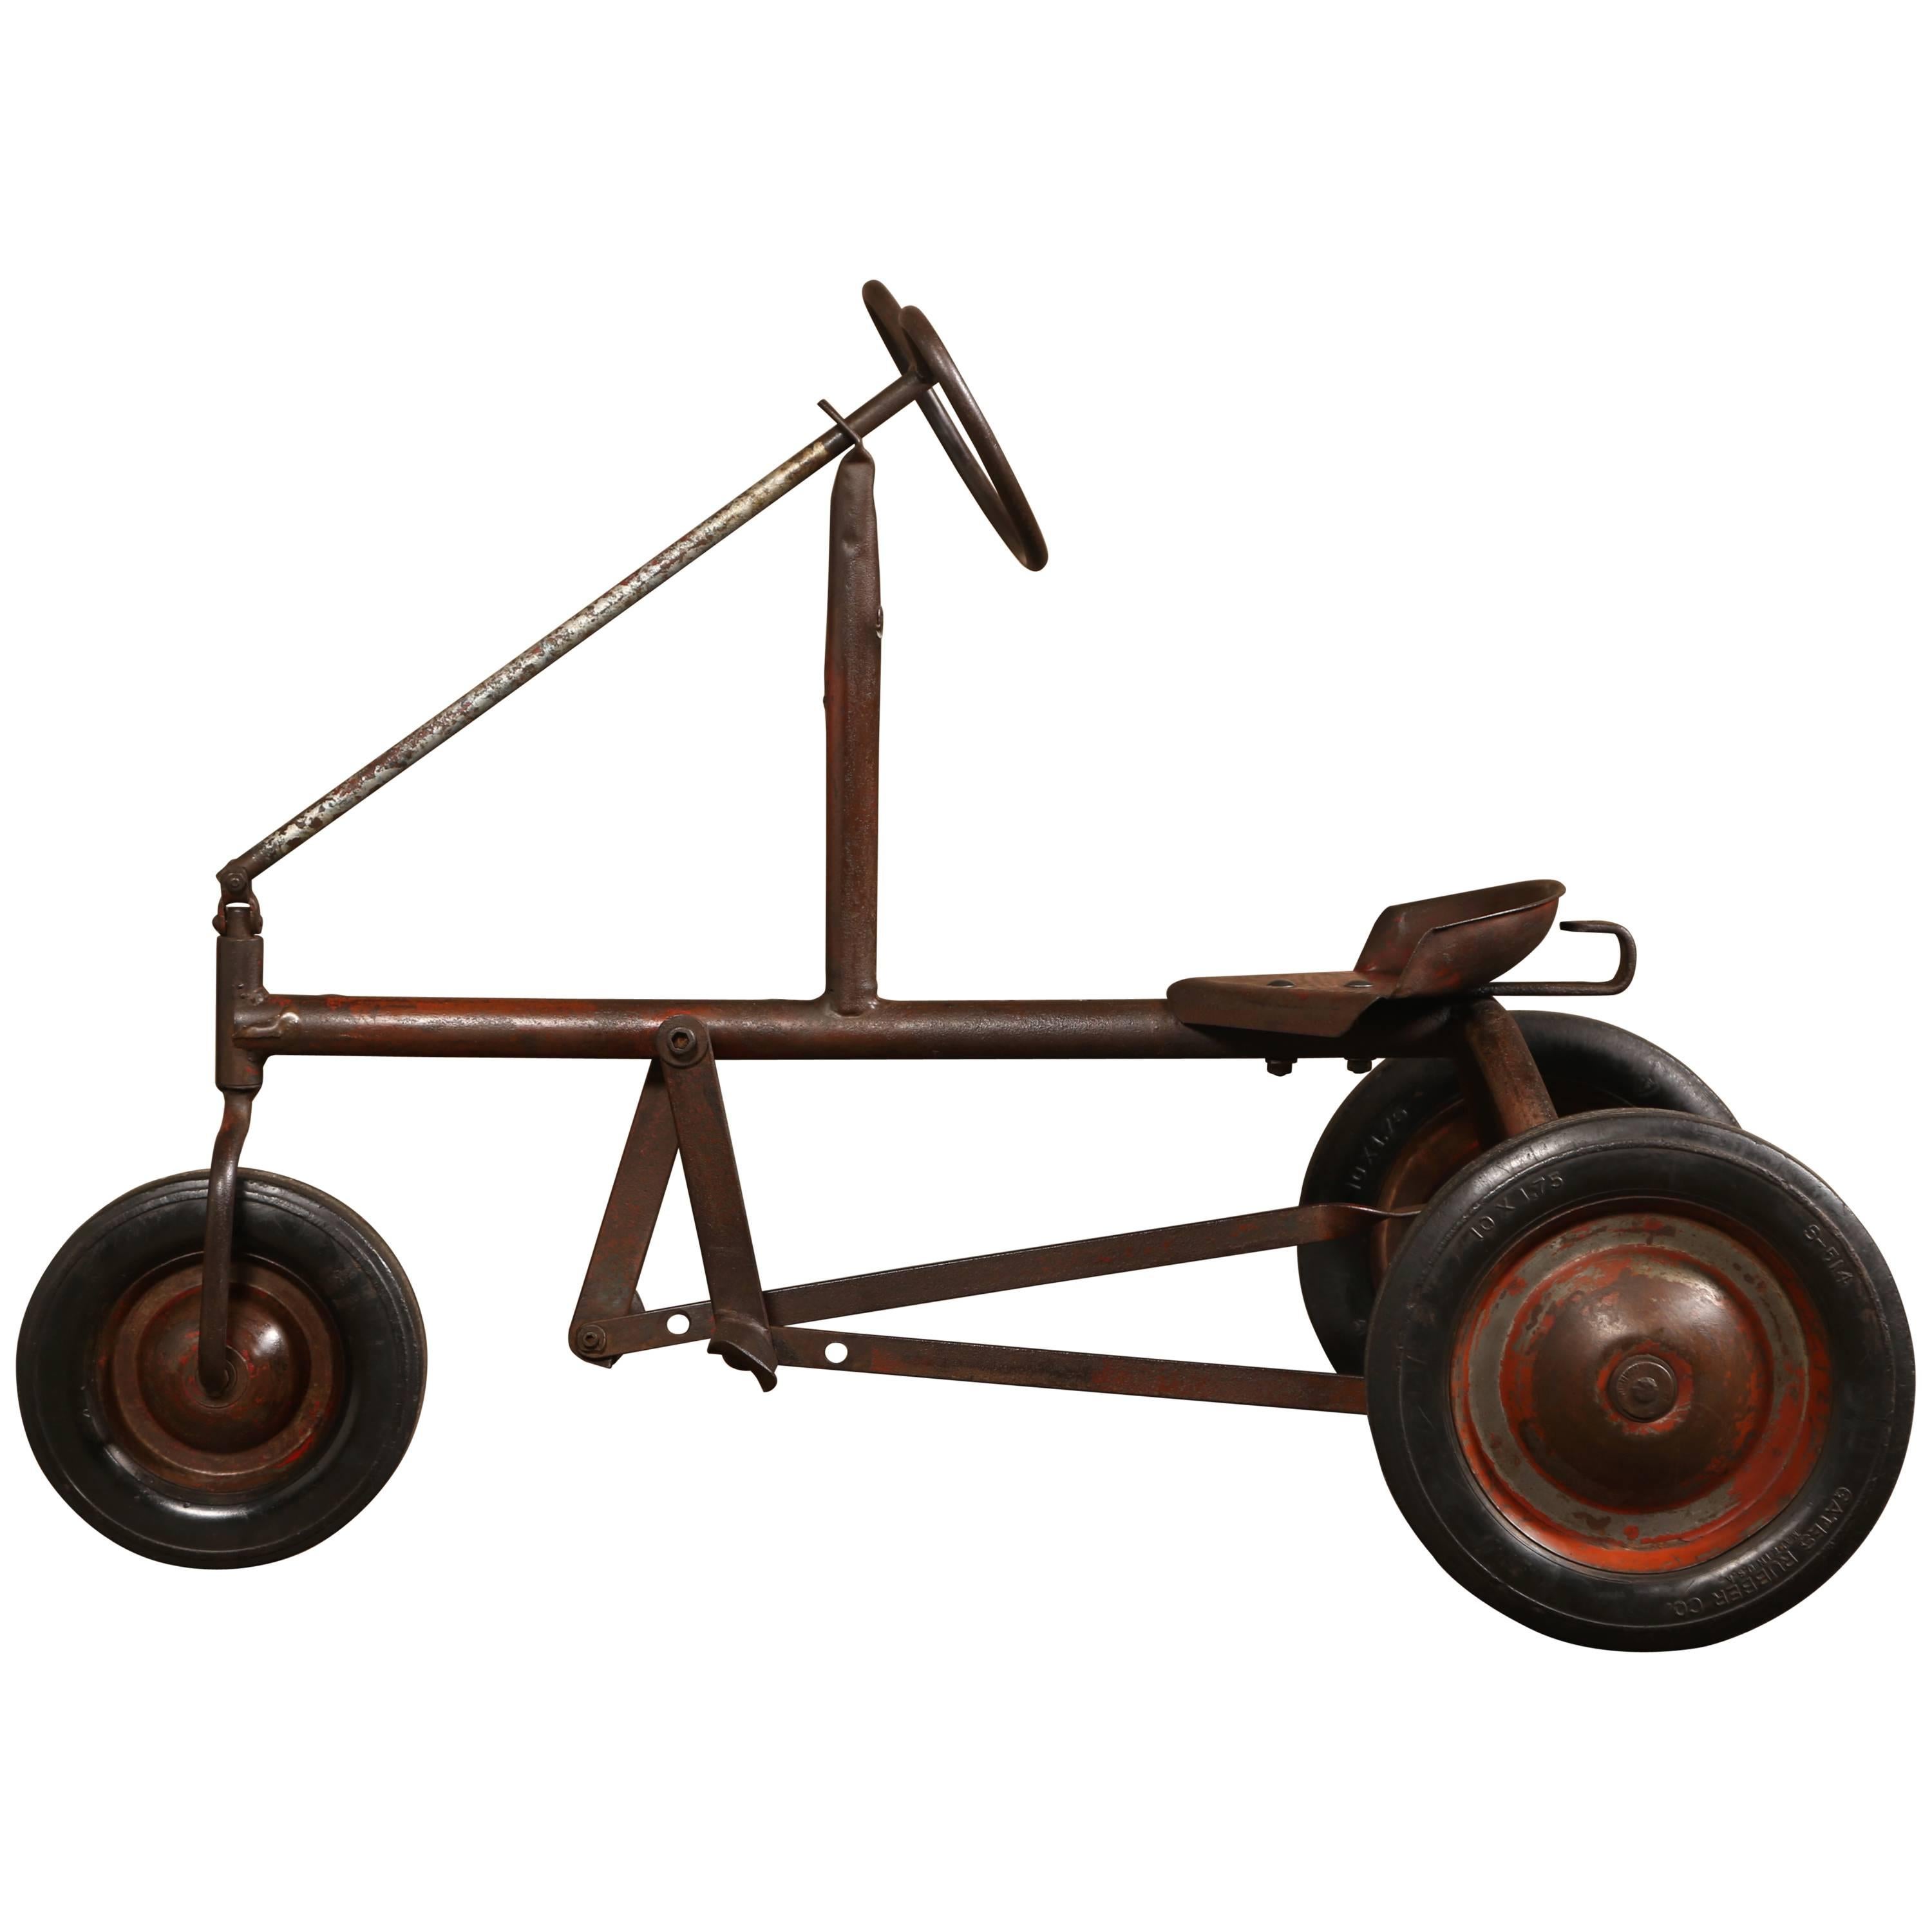 Antique Child's Pedal Toy Car